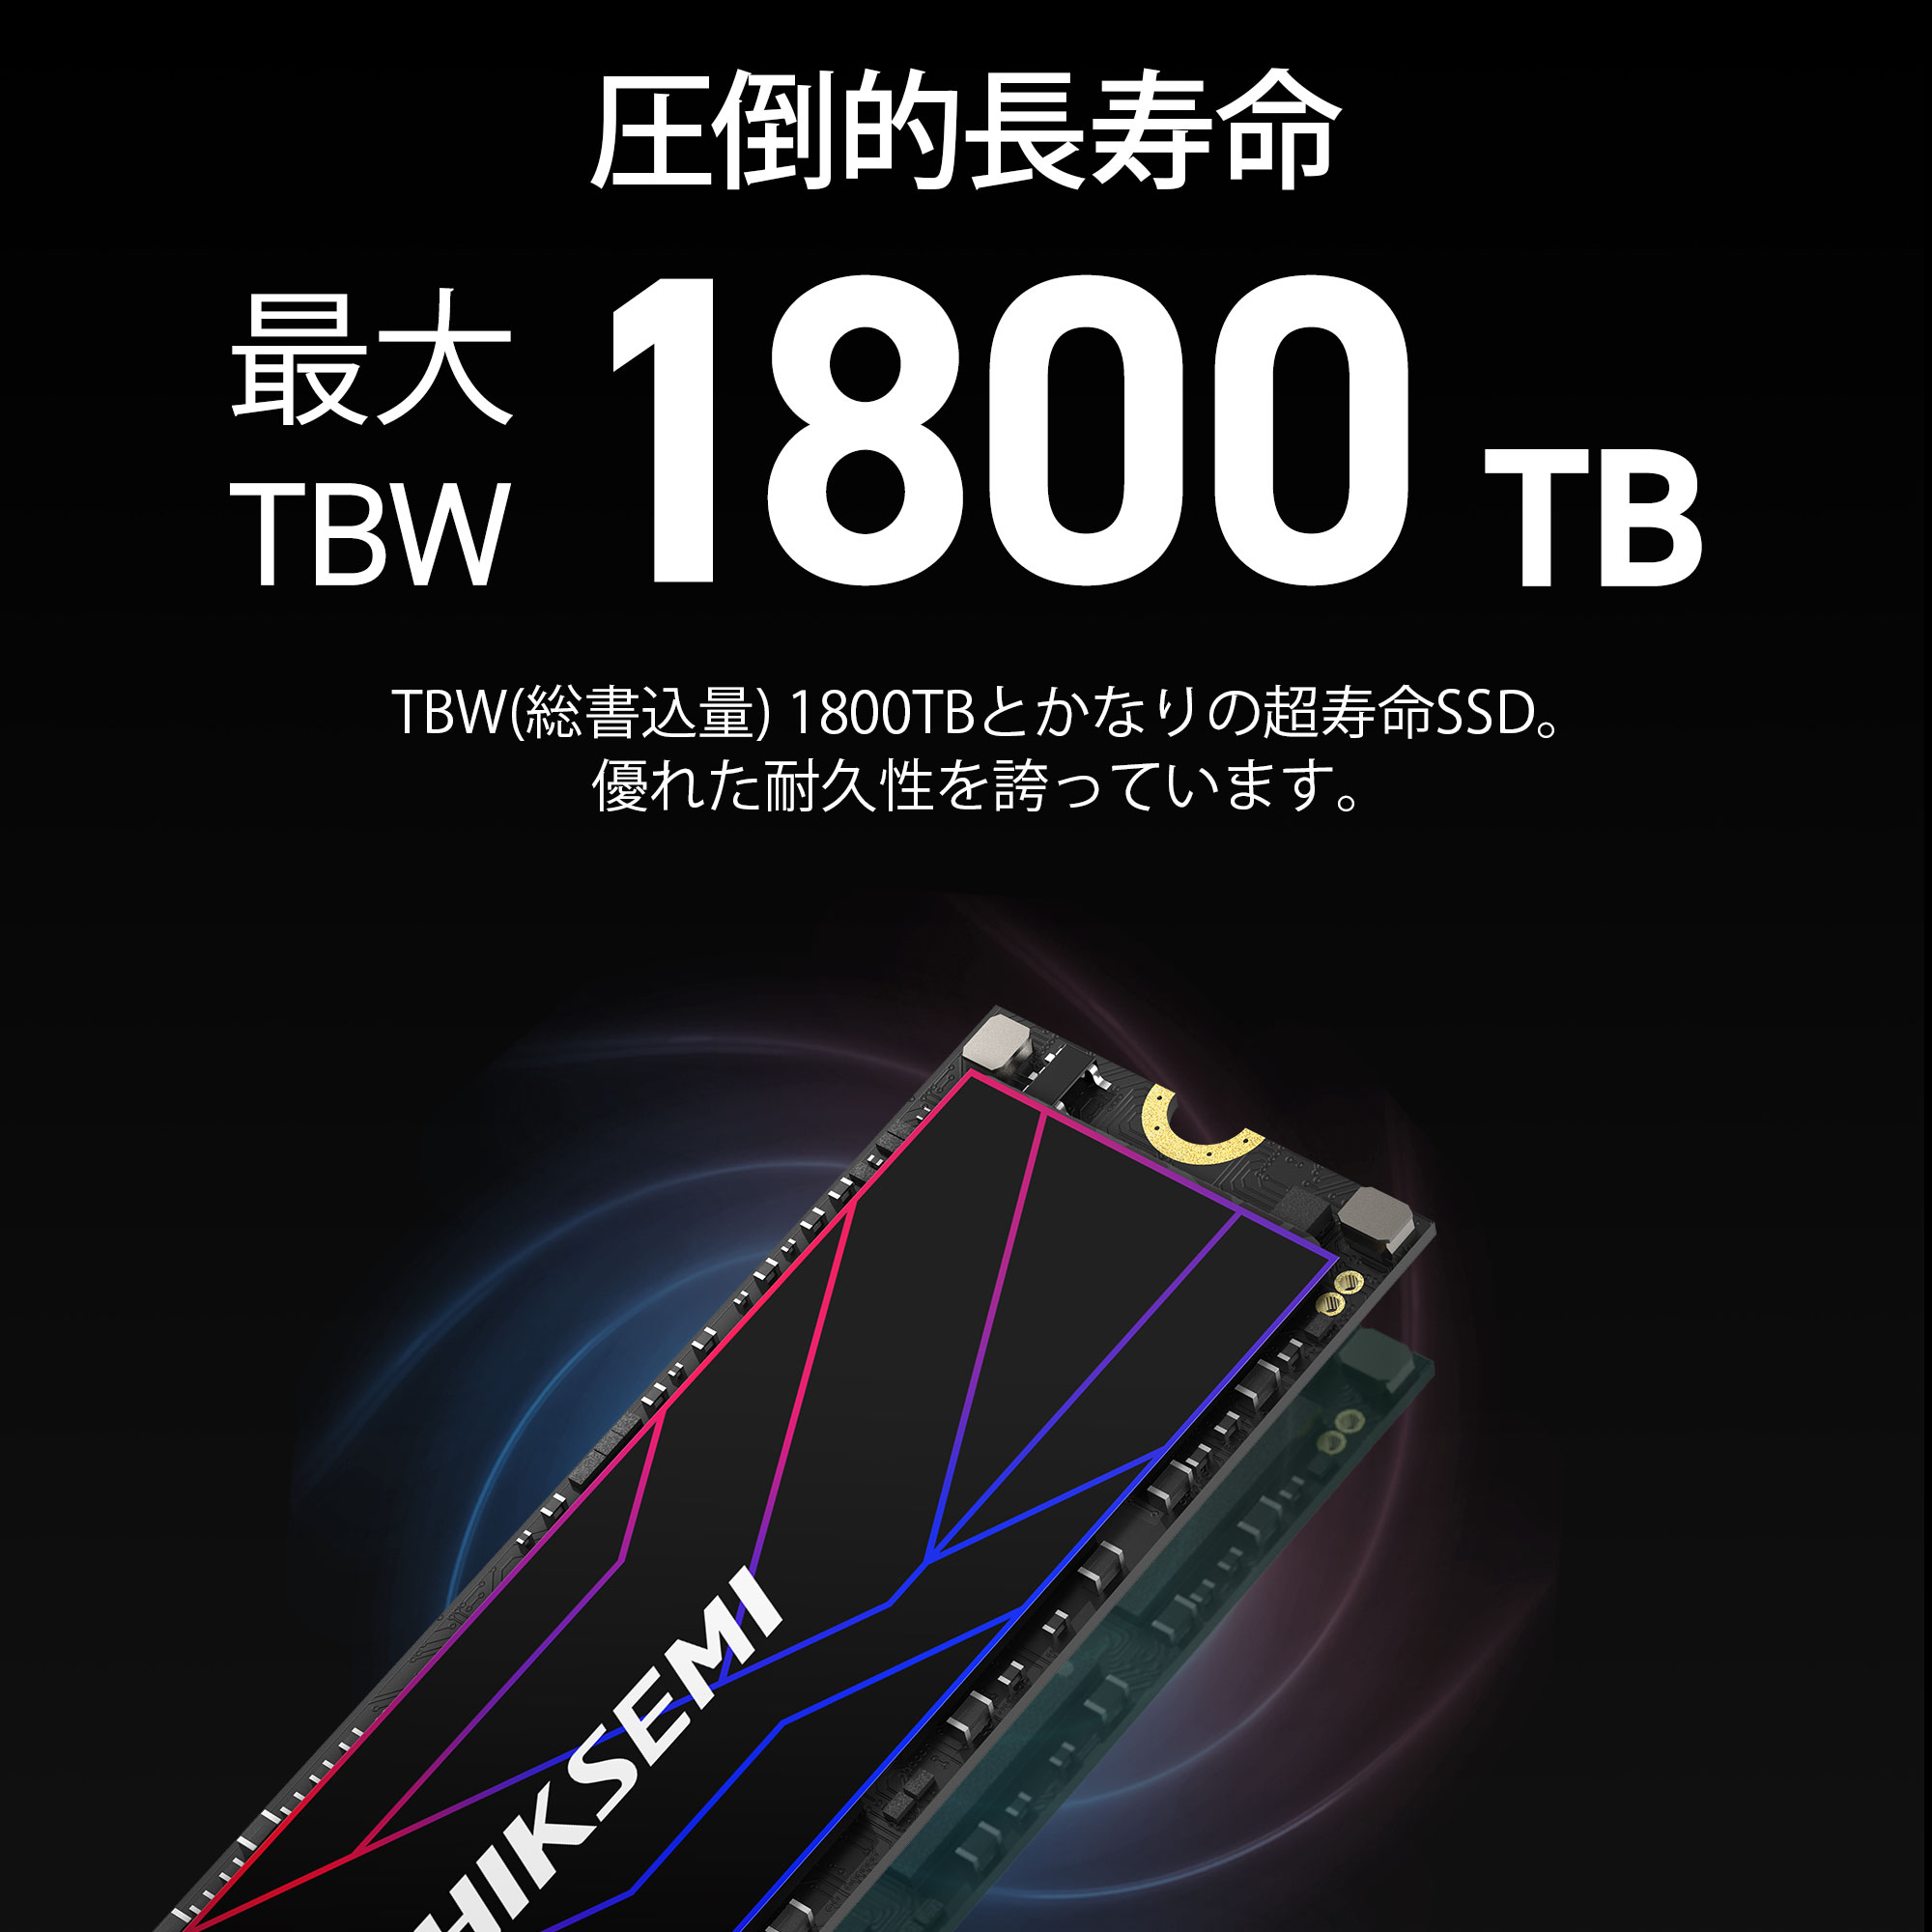 HIKSEMI 1TB NVMe SSD PCIe Gen 4×4 R:7,450MB/s W:6,600MB/s PS5確認済み 放熱シート付き  M.2 Type 2280 内蔵 SSD 3D TLC 国内正規品 メーカー5年保証